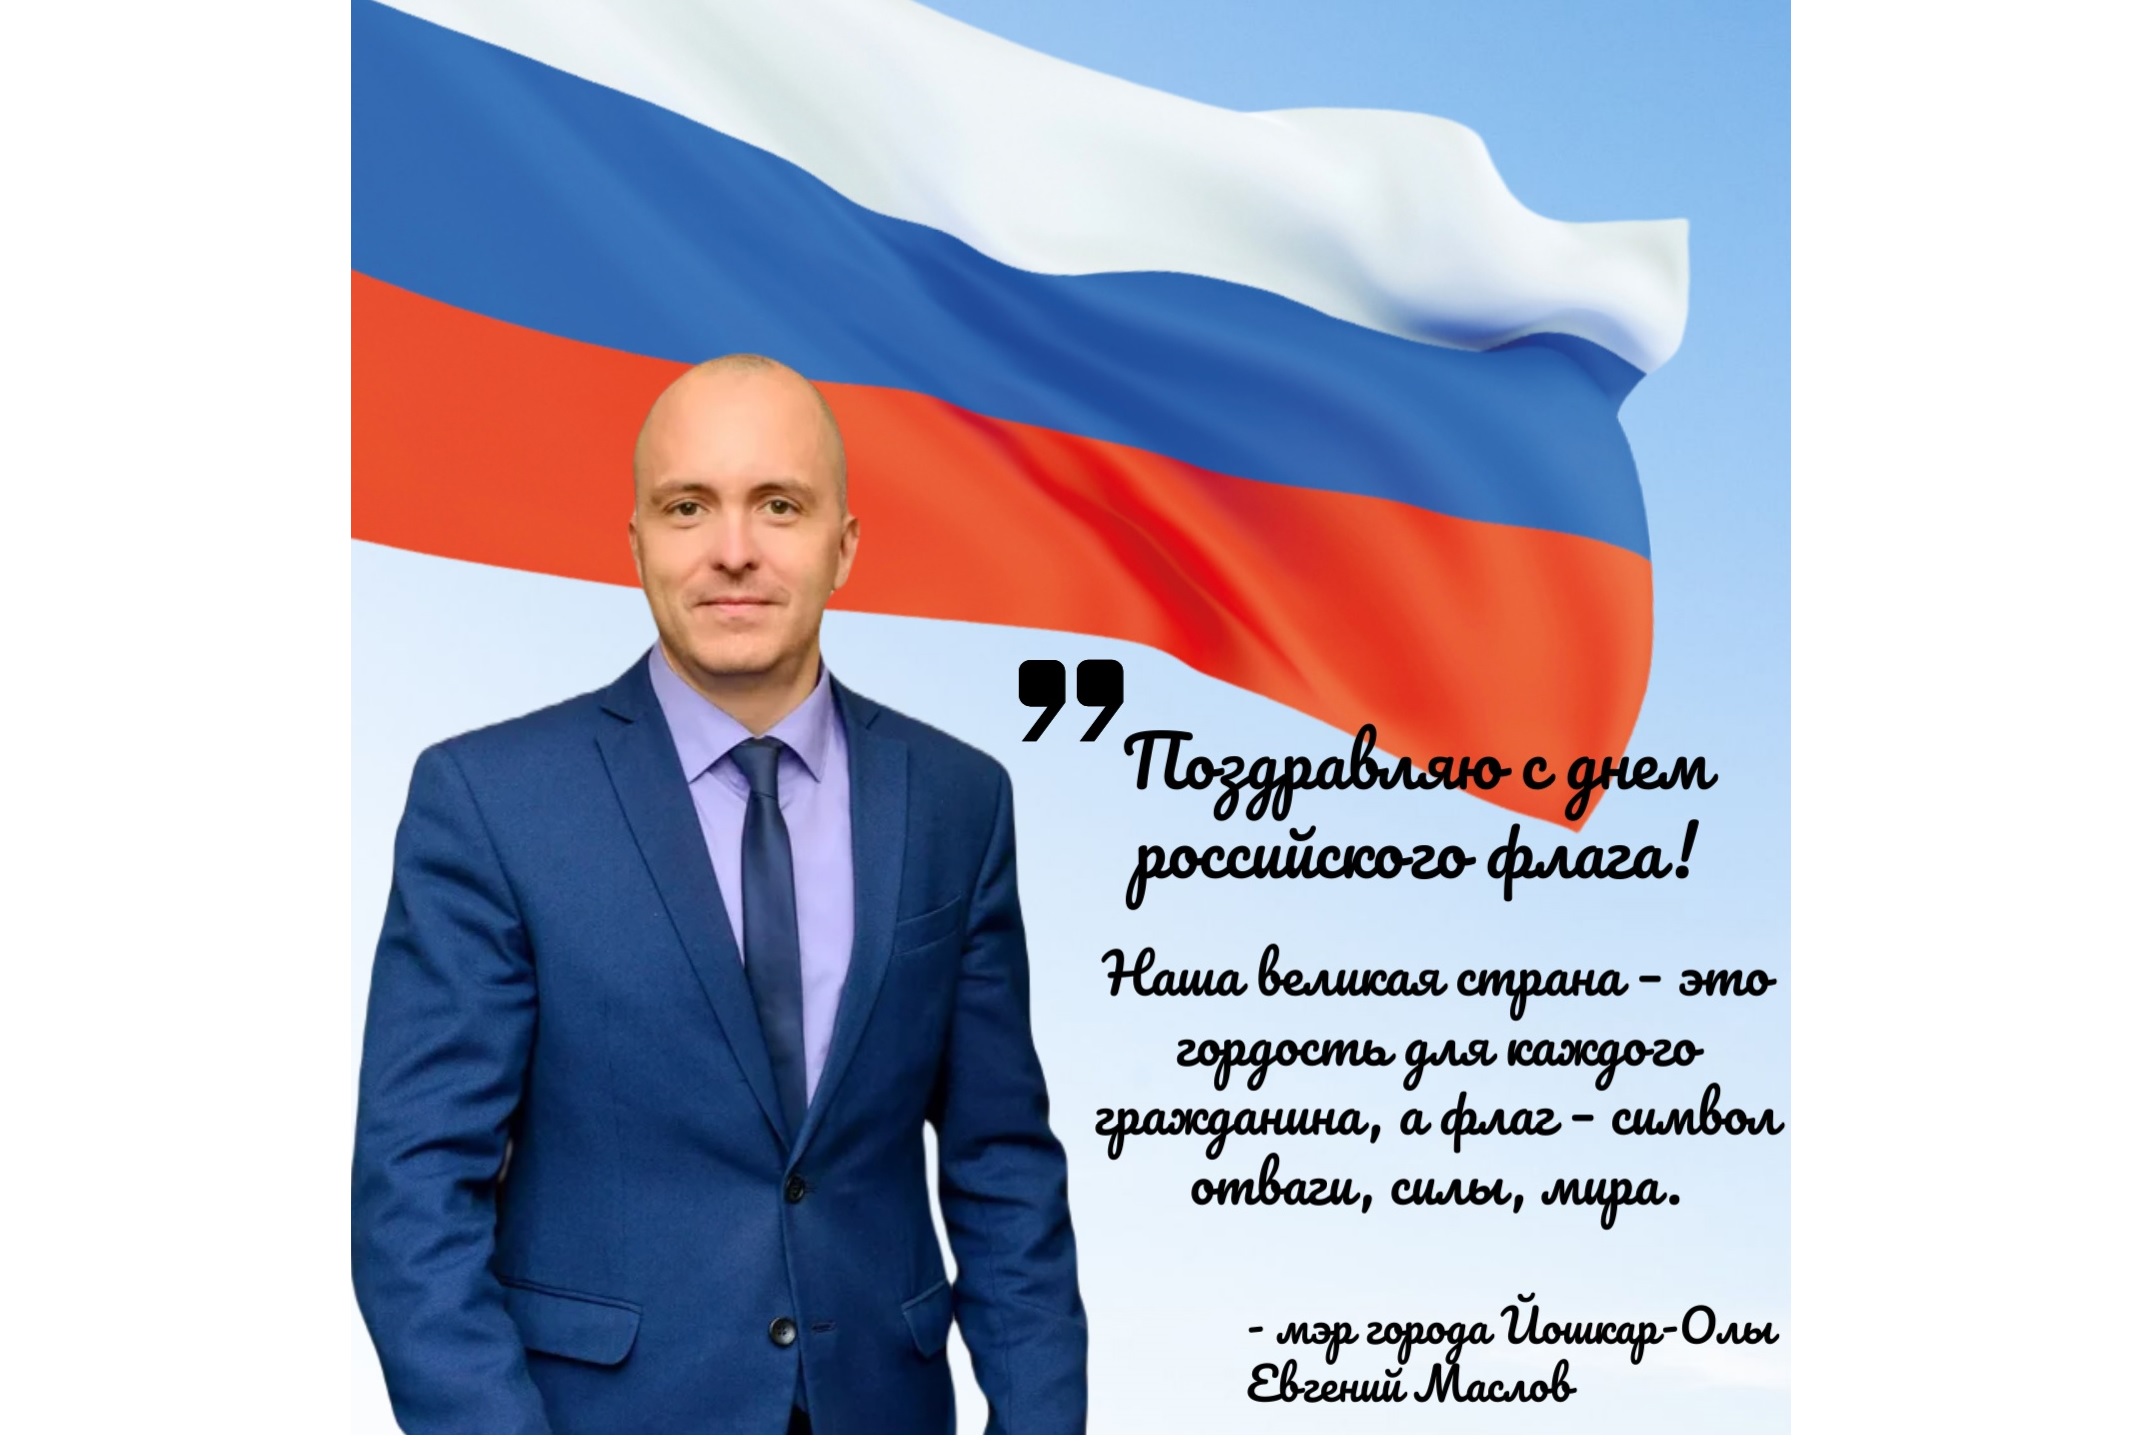 Мэр Йошкар-Олы поздравил горожан с Днем государственного флага России